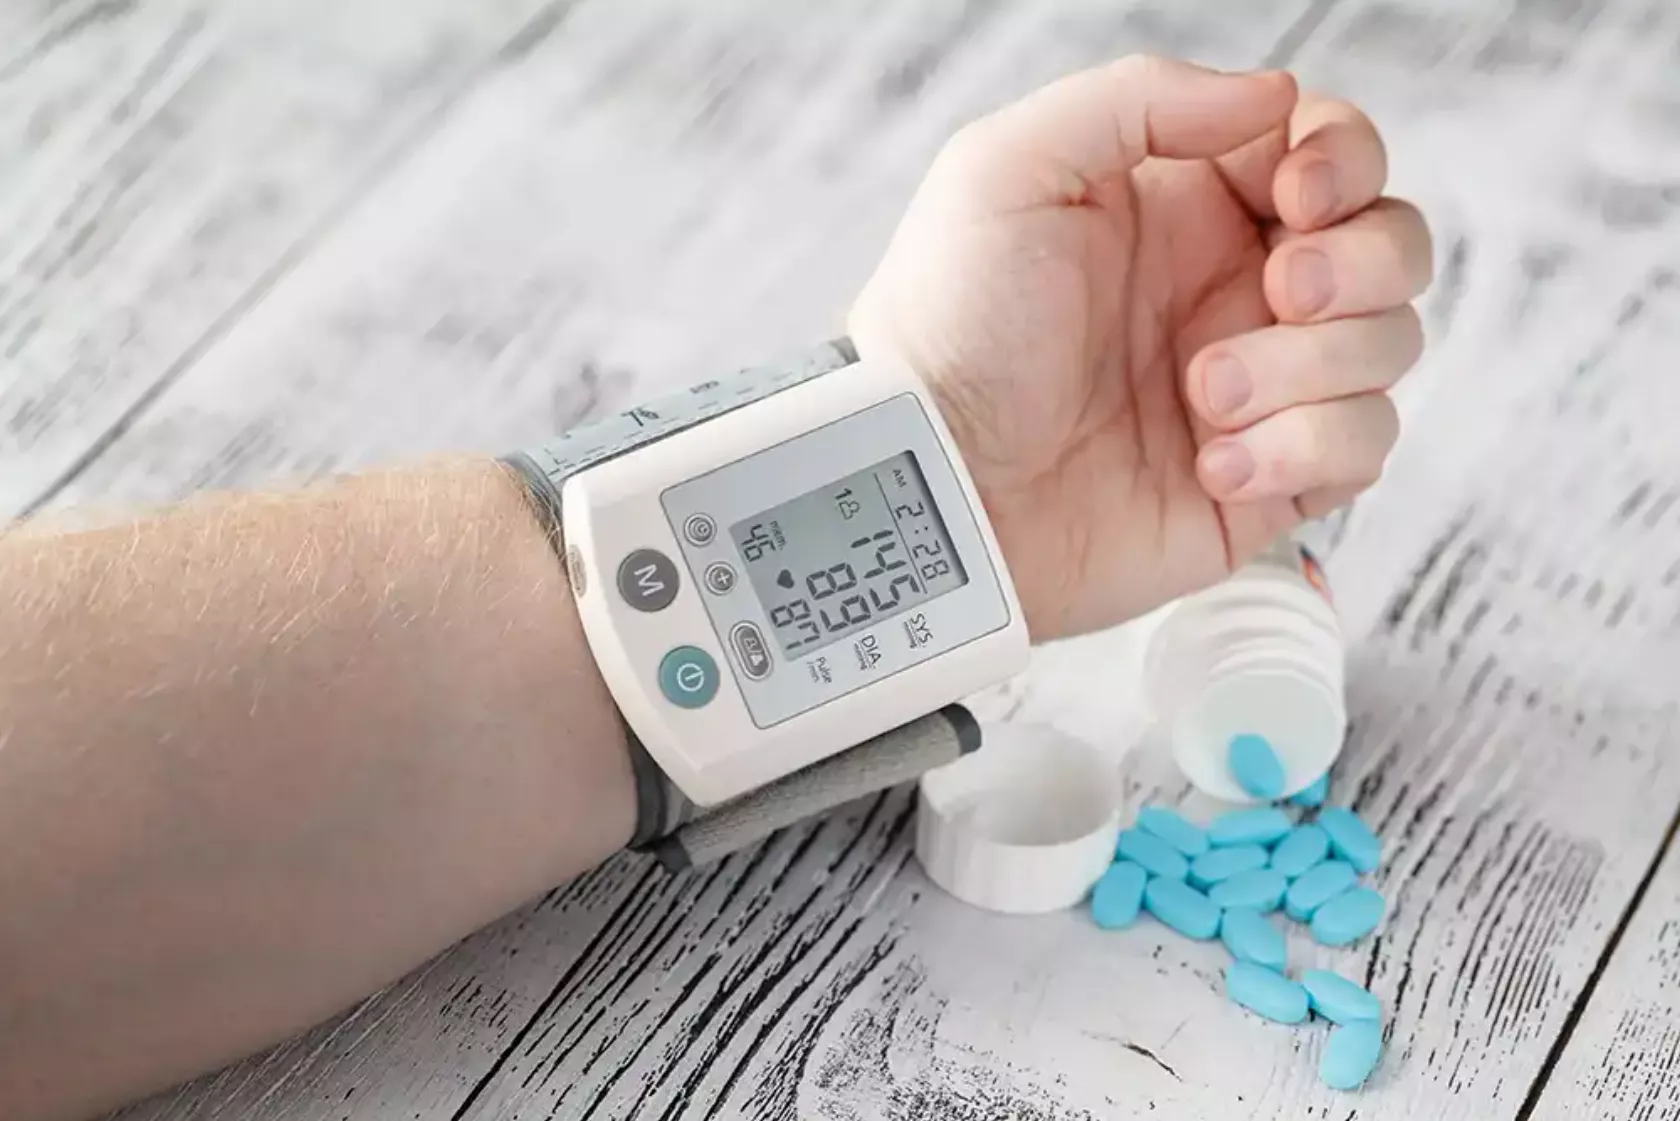 Blutdruckmessgerät am Handgelenk eines Patienten und eines umgeschüttete Medikamentenpackung, blaue Pillen auf dem Tisch.